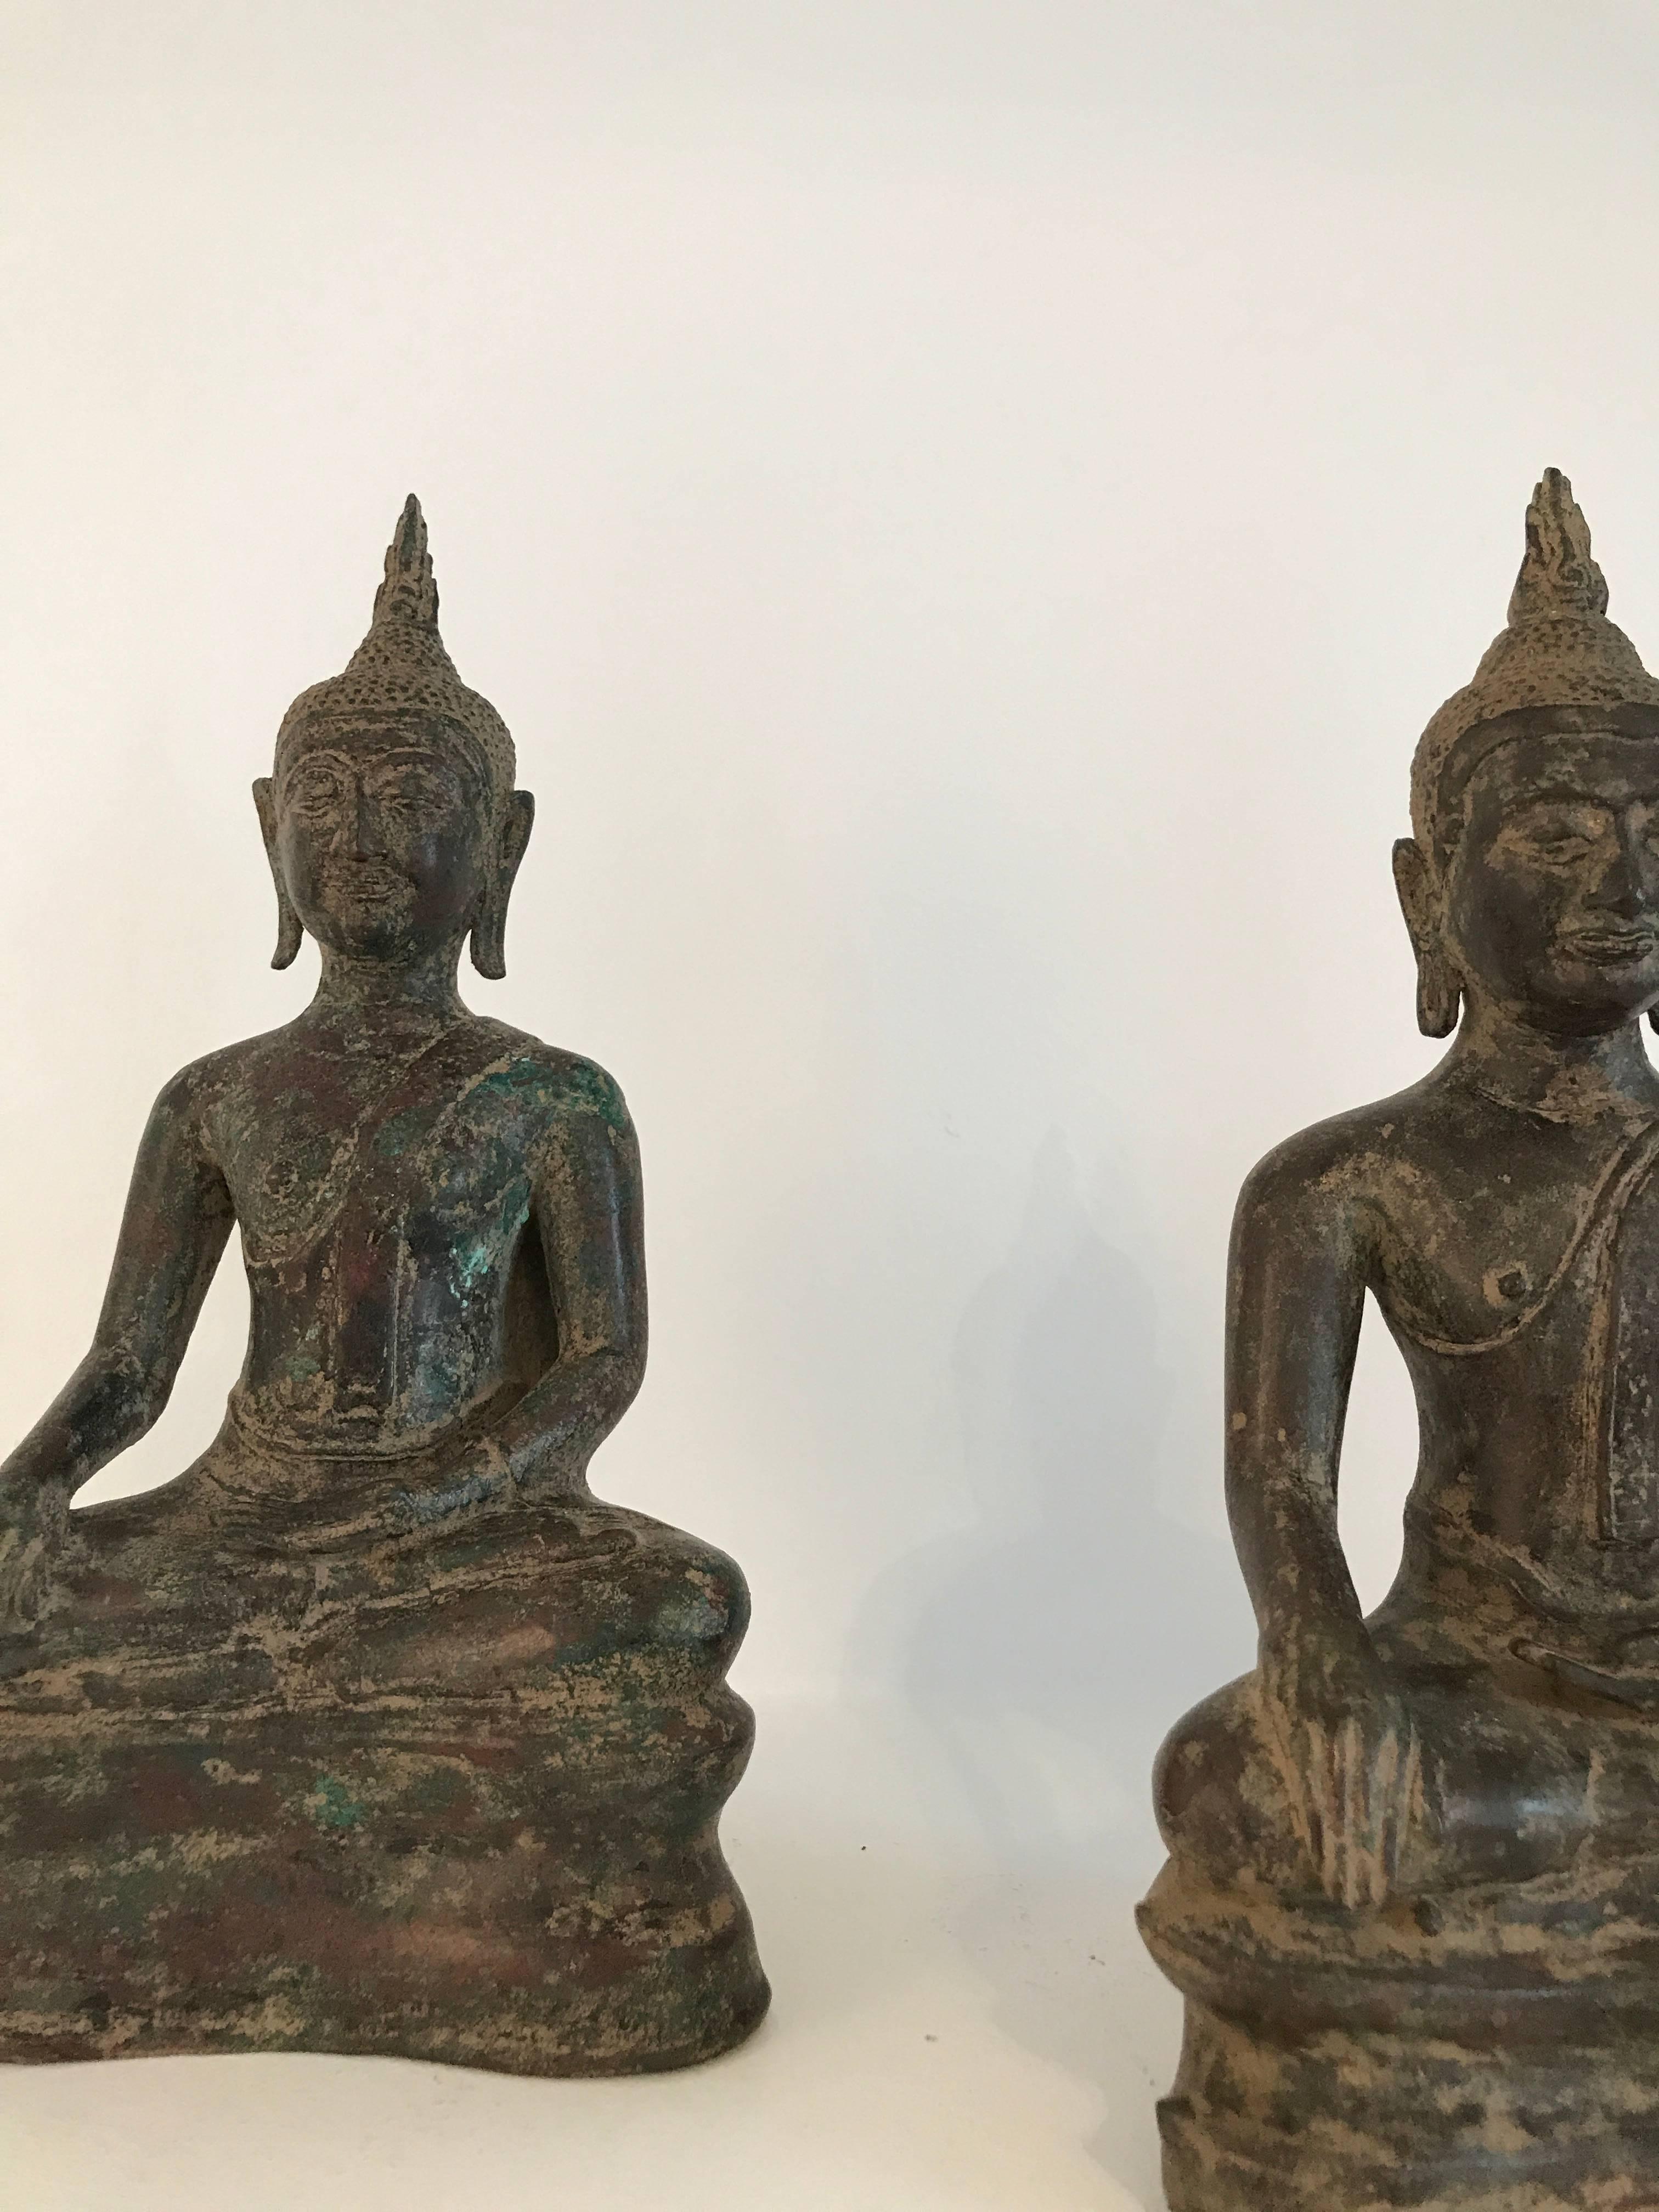 Zwei Bronzebuddhas, Ayutthaya, 16. Jahrhundert, Thailand
mit toller Patina
abmessungen
26 cm X 13 cm X 8 cm
24 cm X 14 cm X 8 cm.